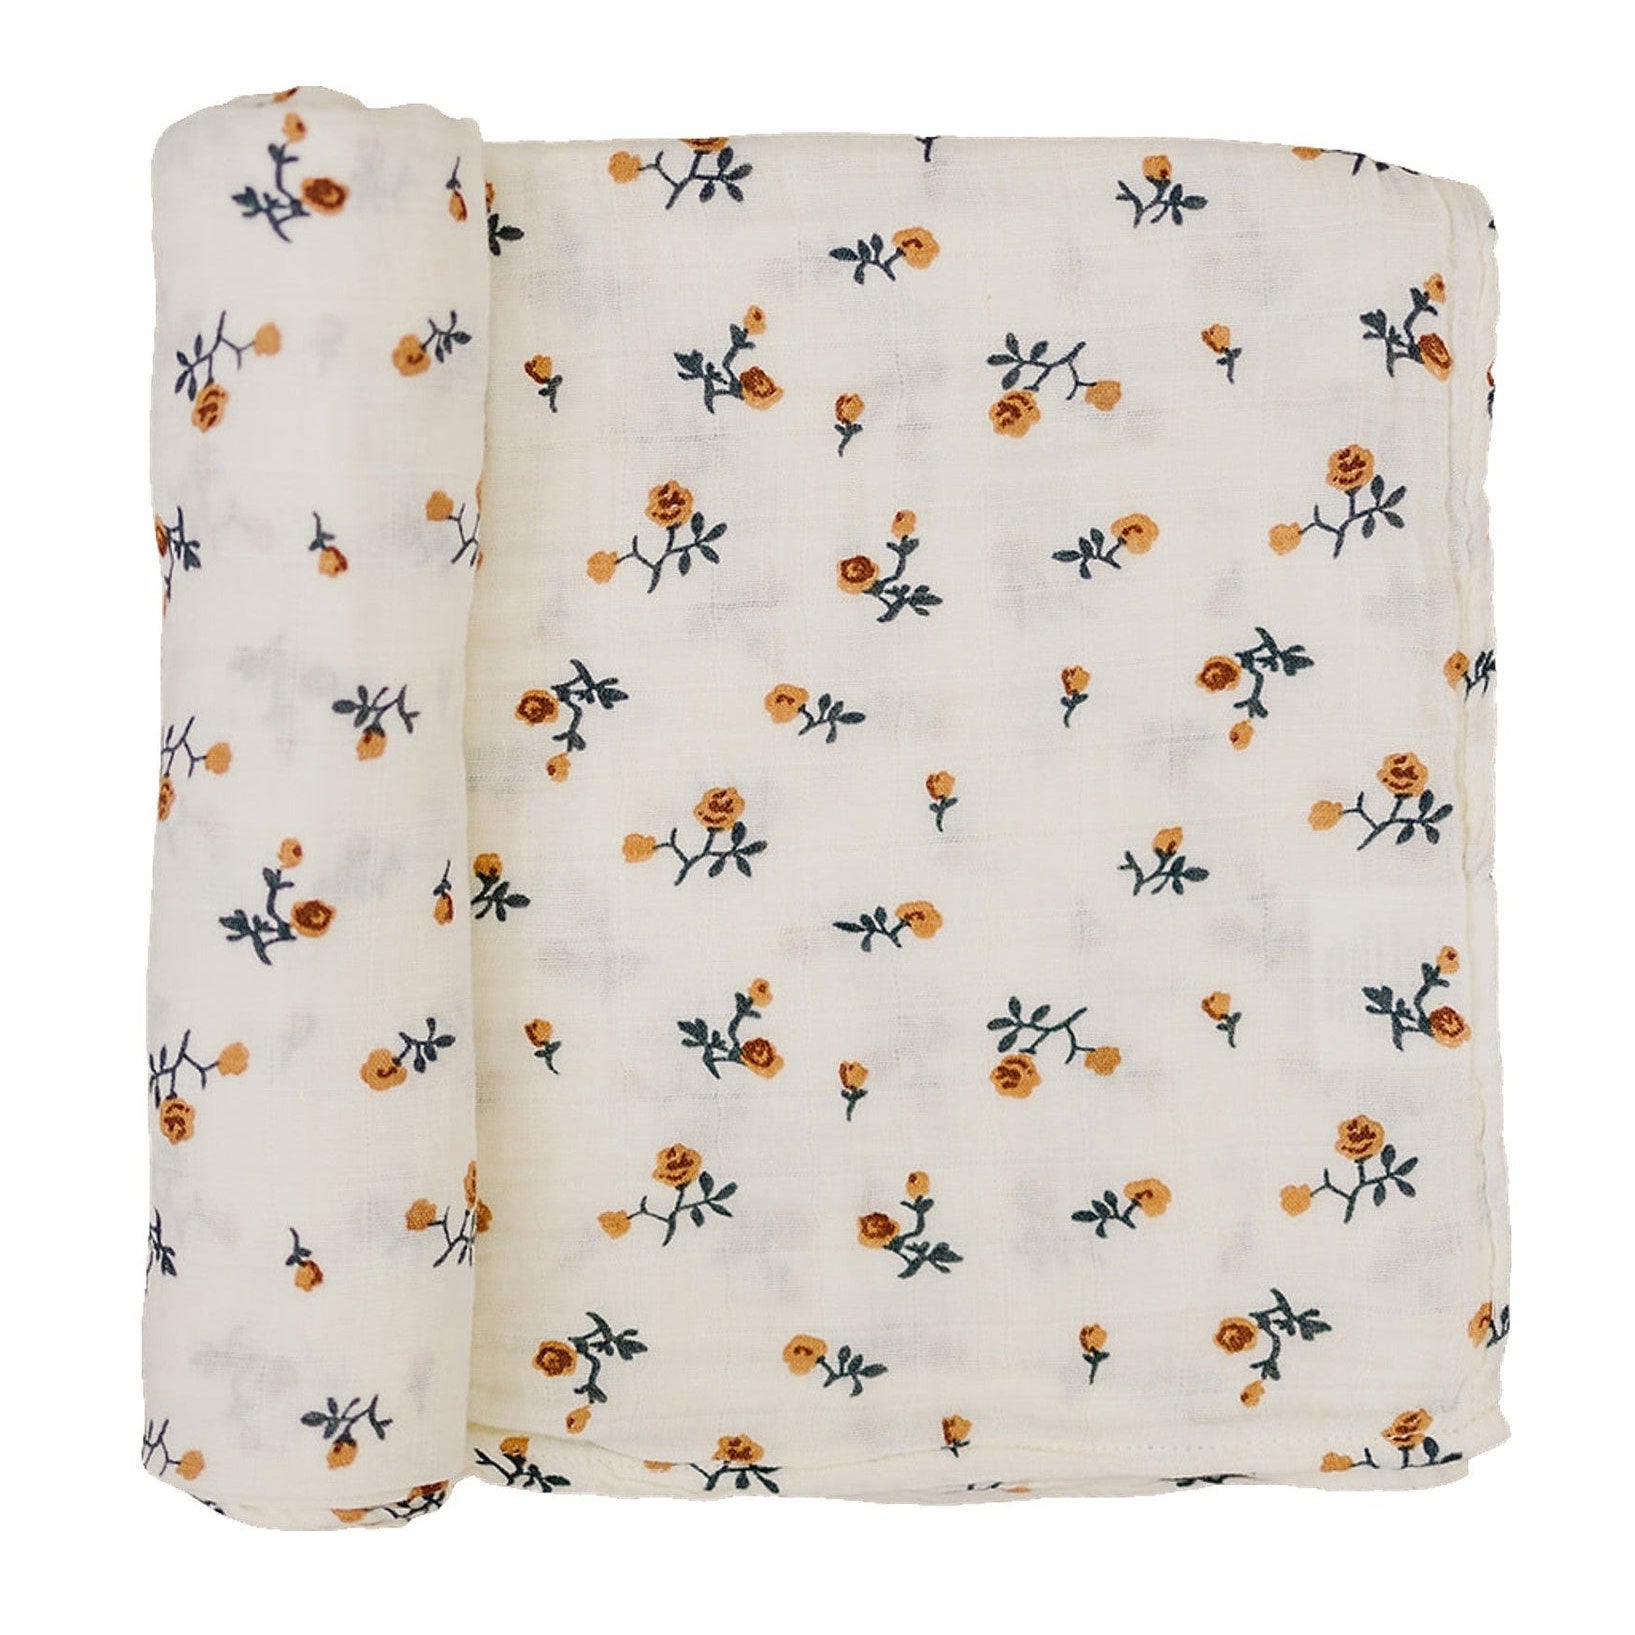 Mebie Baby Muslin Swaddle Blanket - Cream Floral